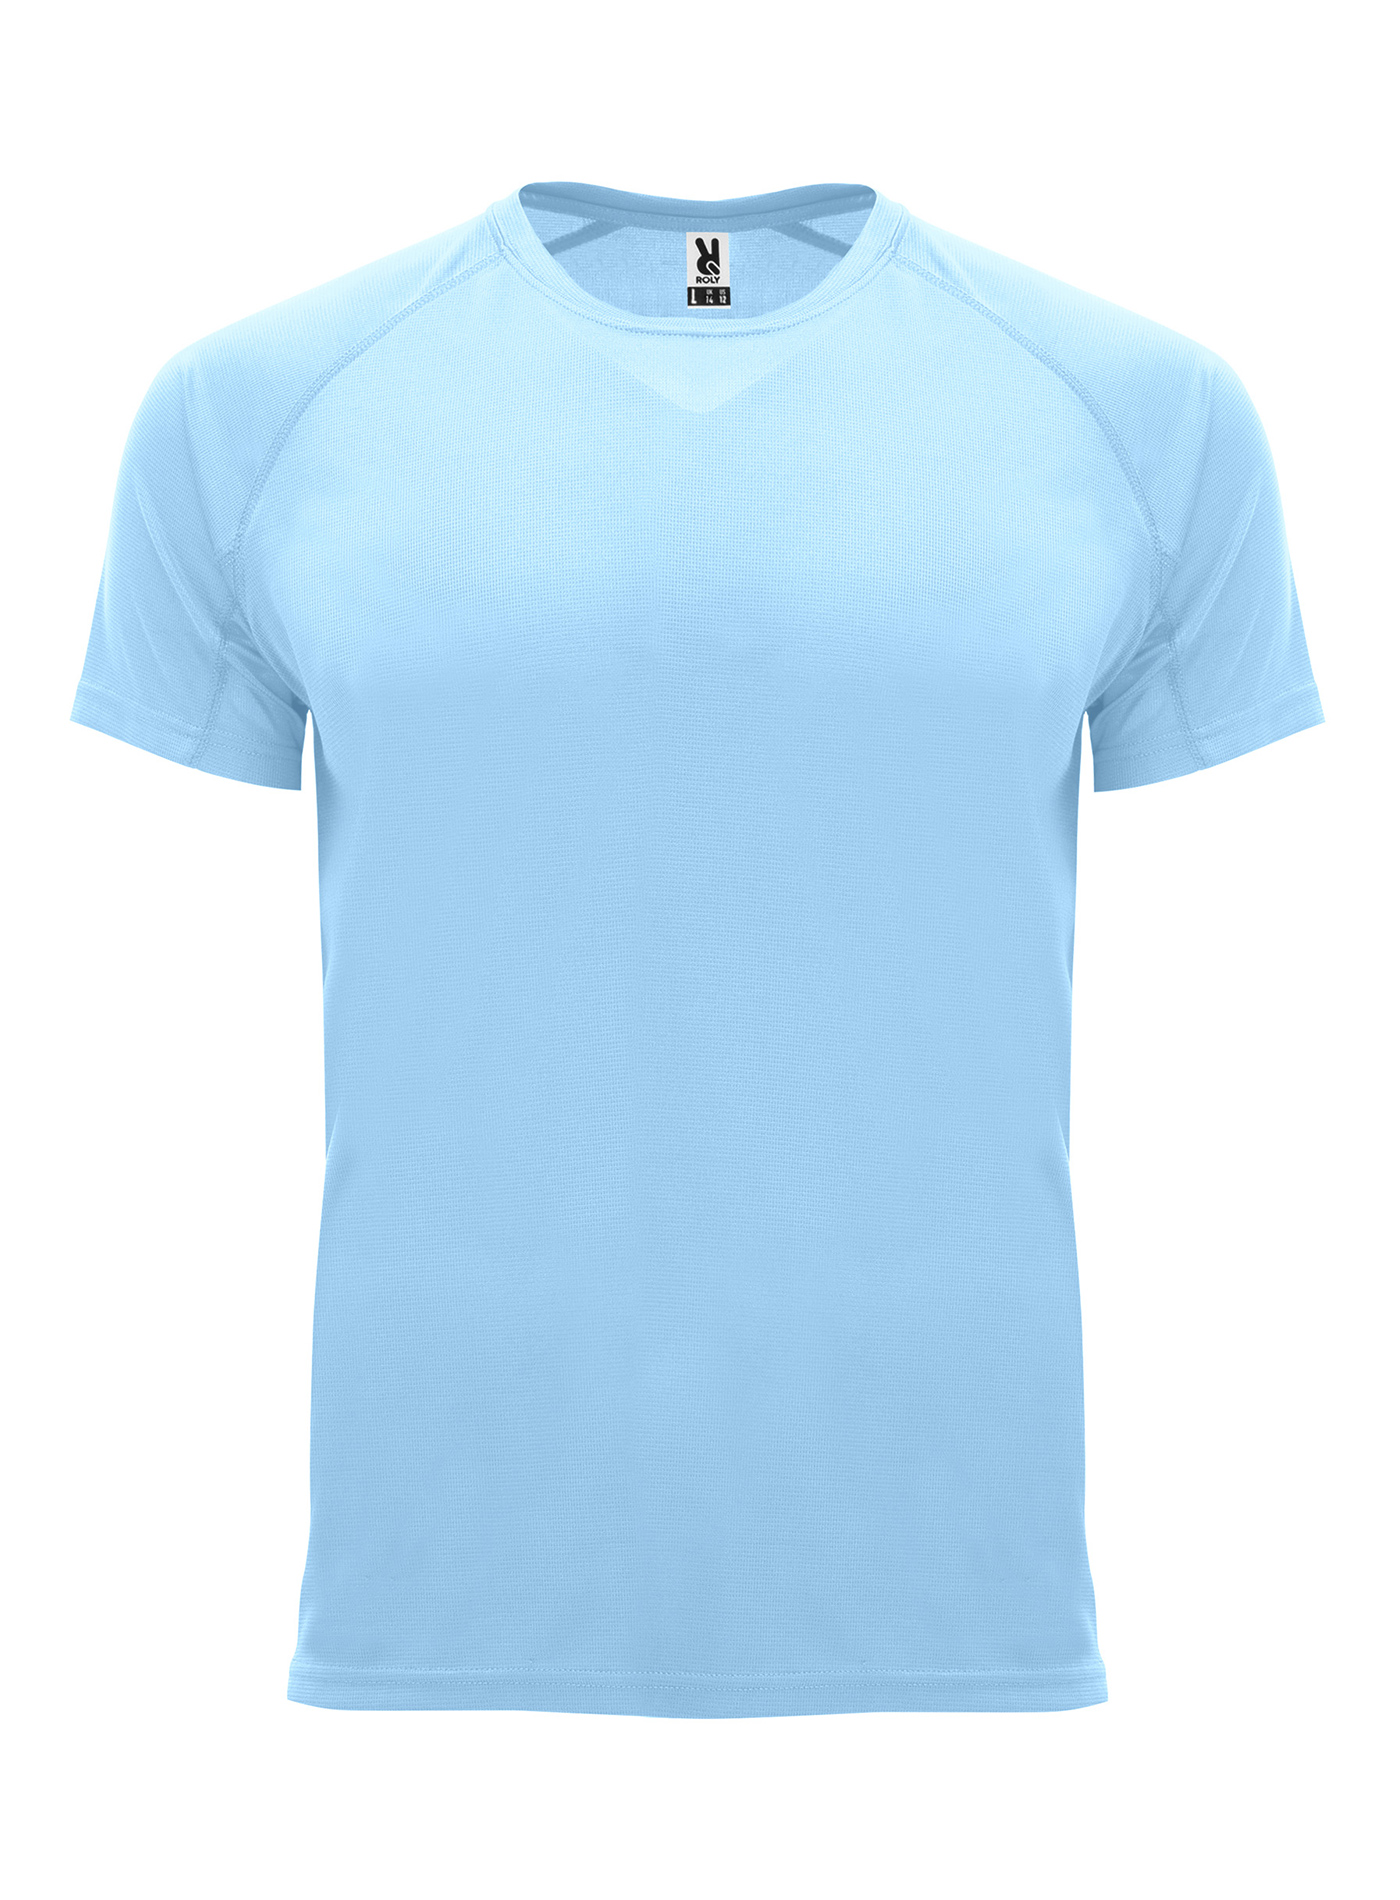 Pánské sportovní tričko Roly Bahrain - Blankytně modrá L